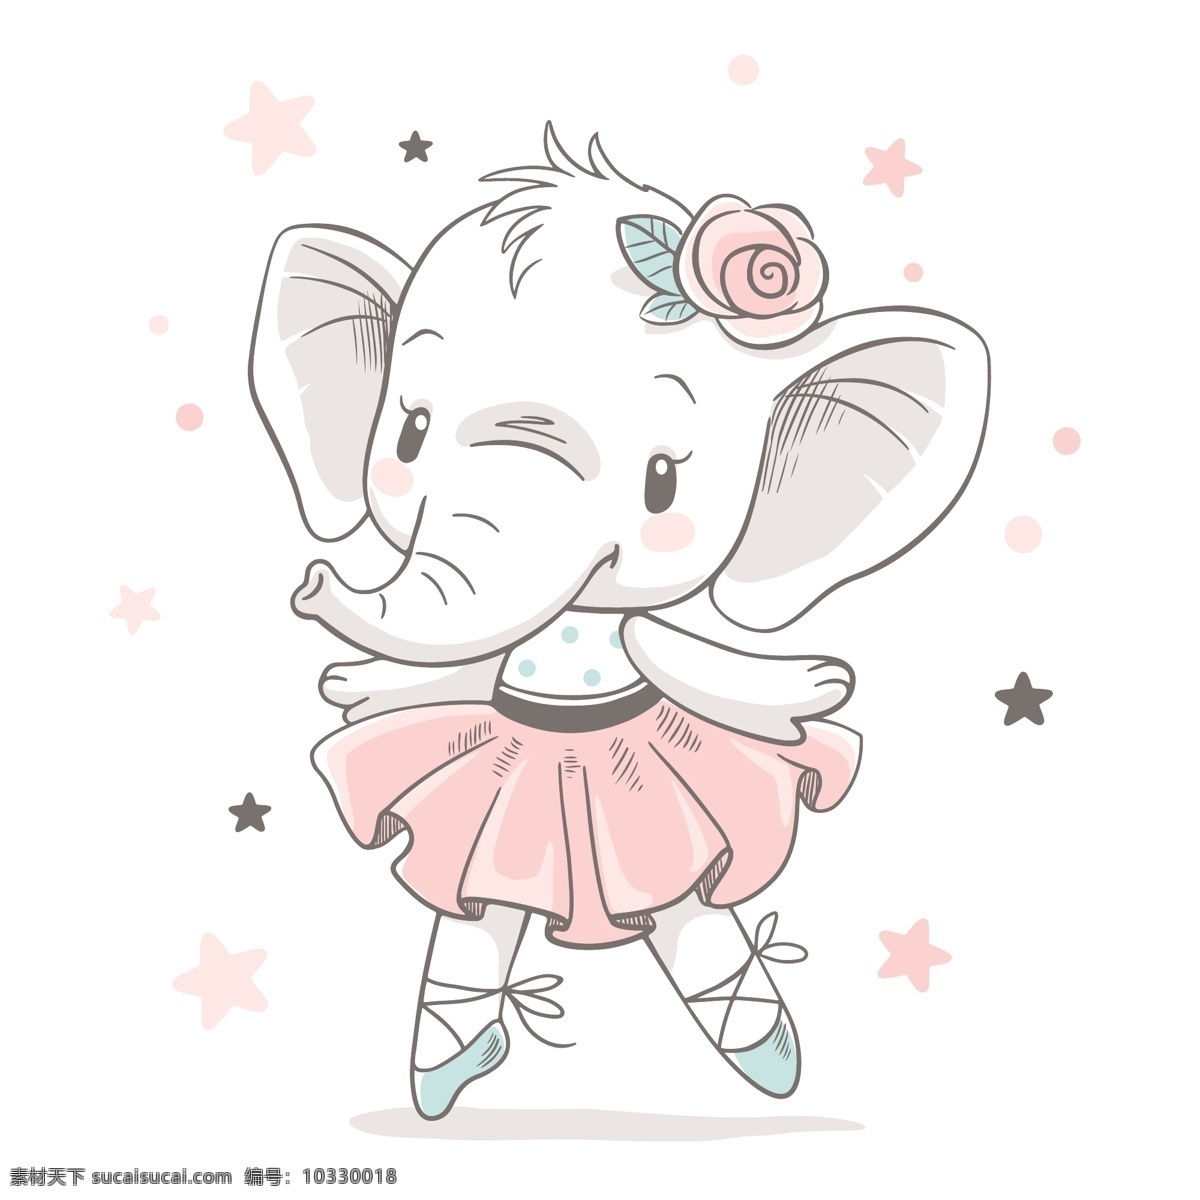 卡通手绘大象 大象 手绘 婴儿素材 淡彩 清新 卡通动物 可爱 小象 卡通设计